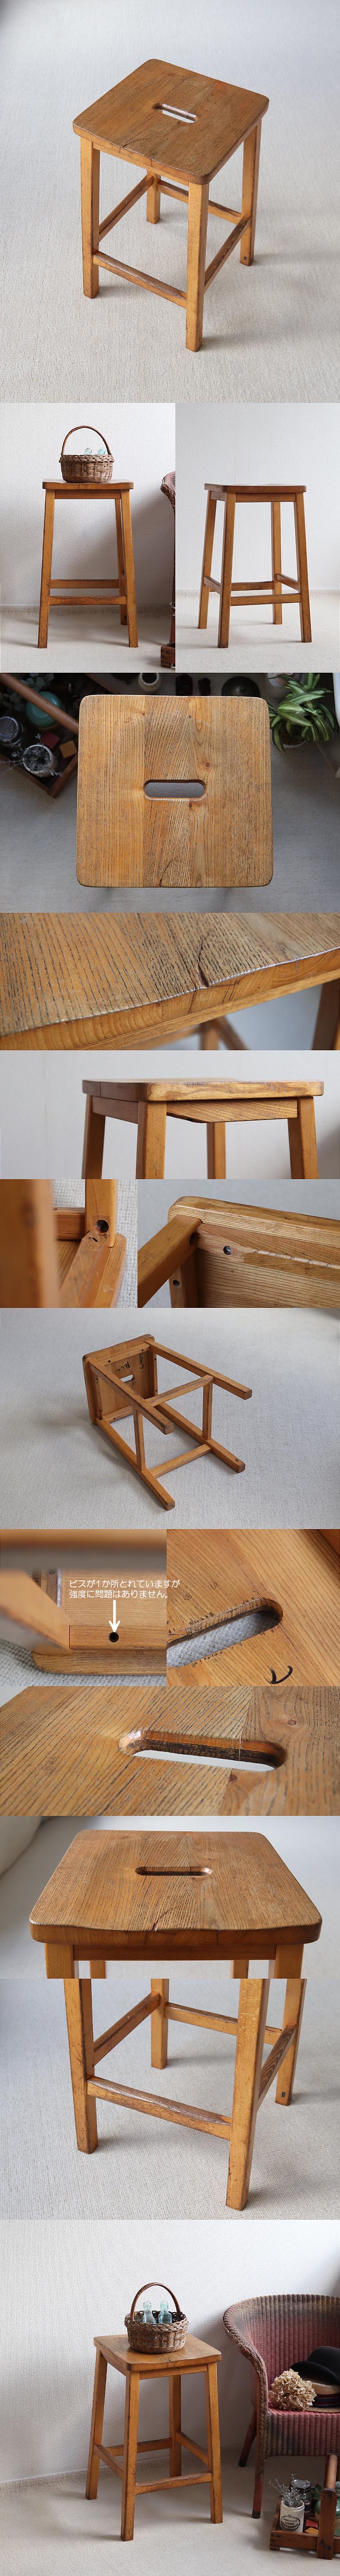 イギリス ヴィンテージ ハイスツール 木製椅子 アトリエ カントリー家具「スクールチェア」T-873